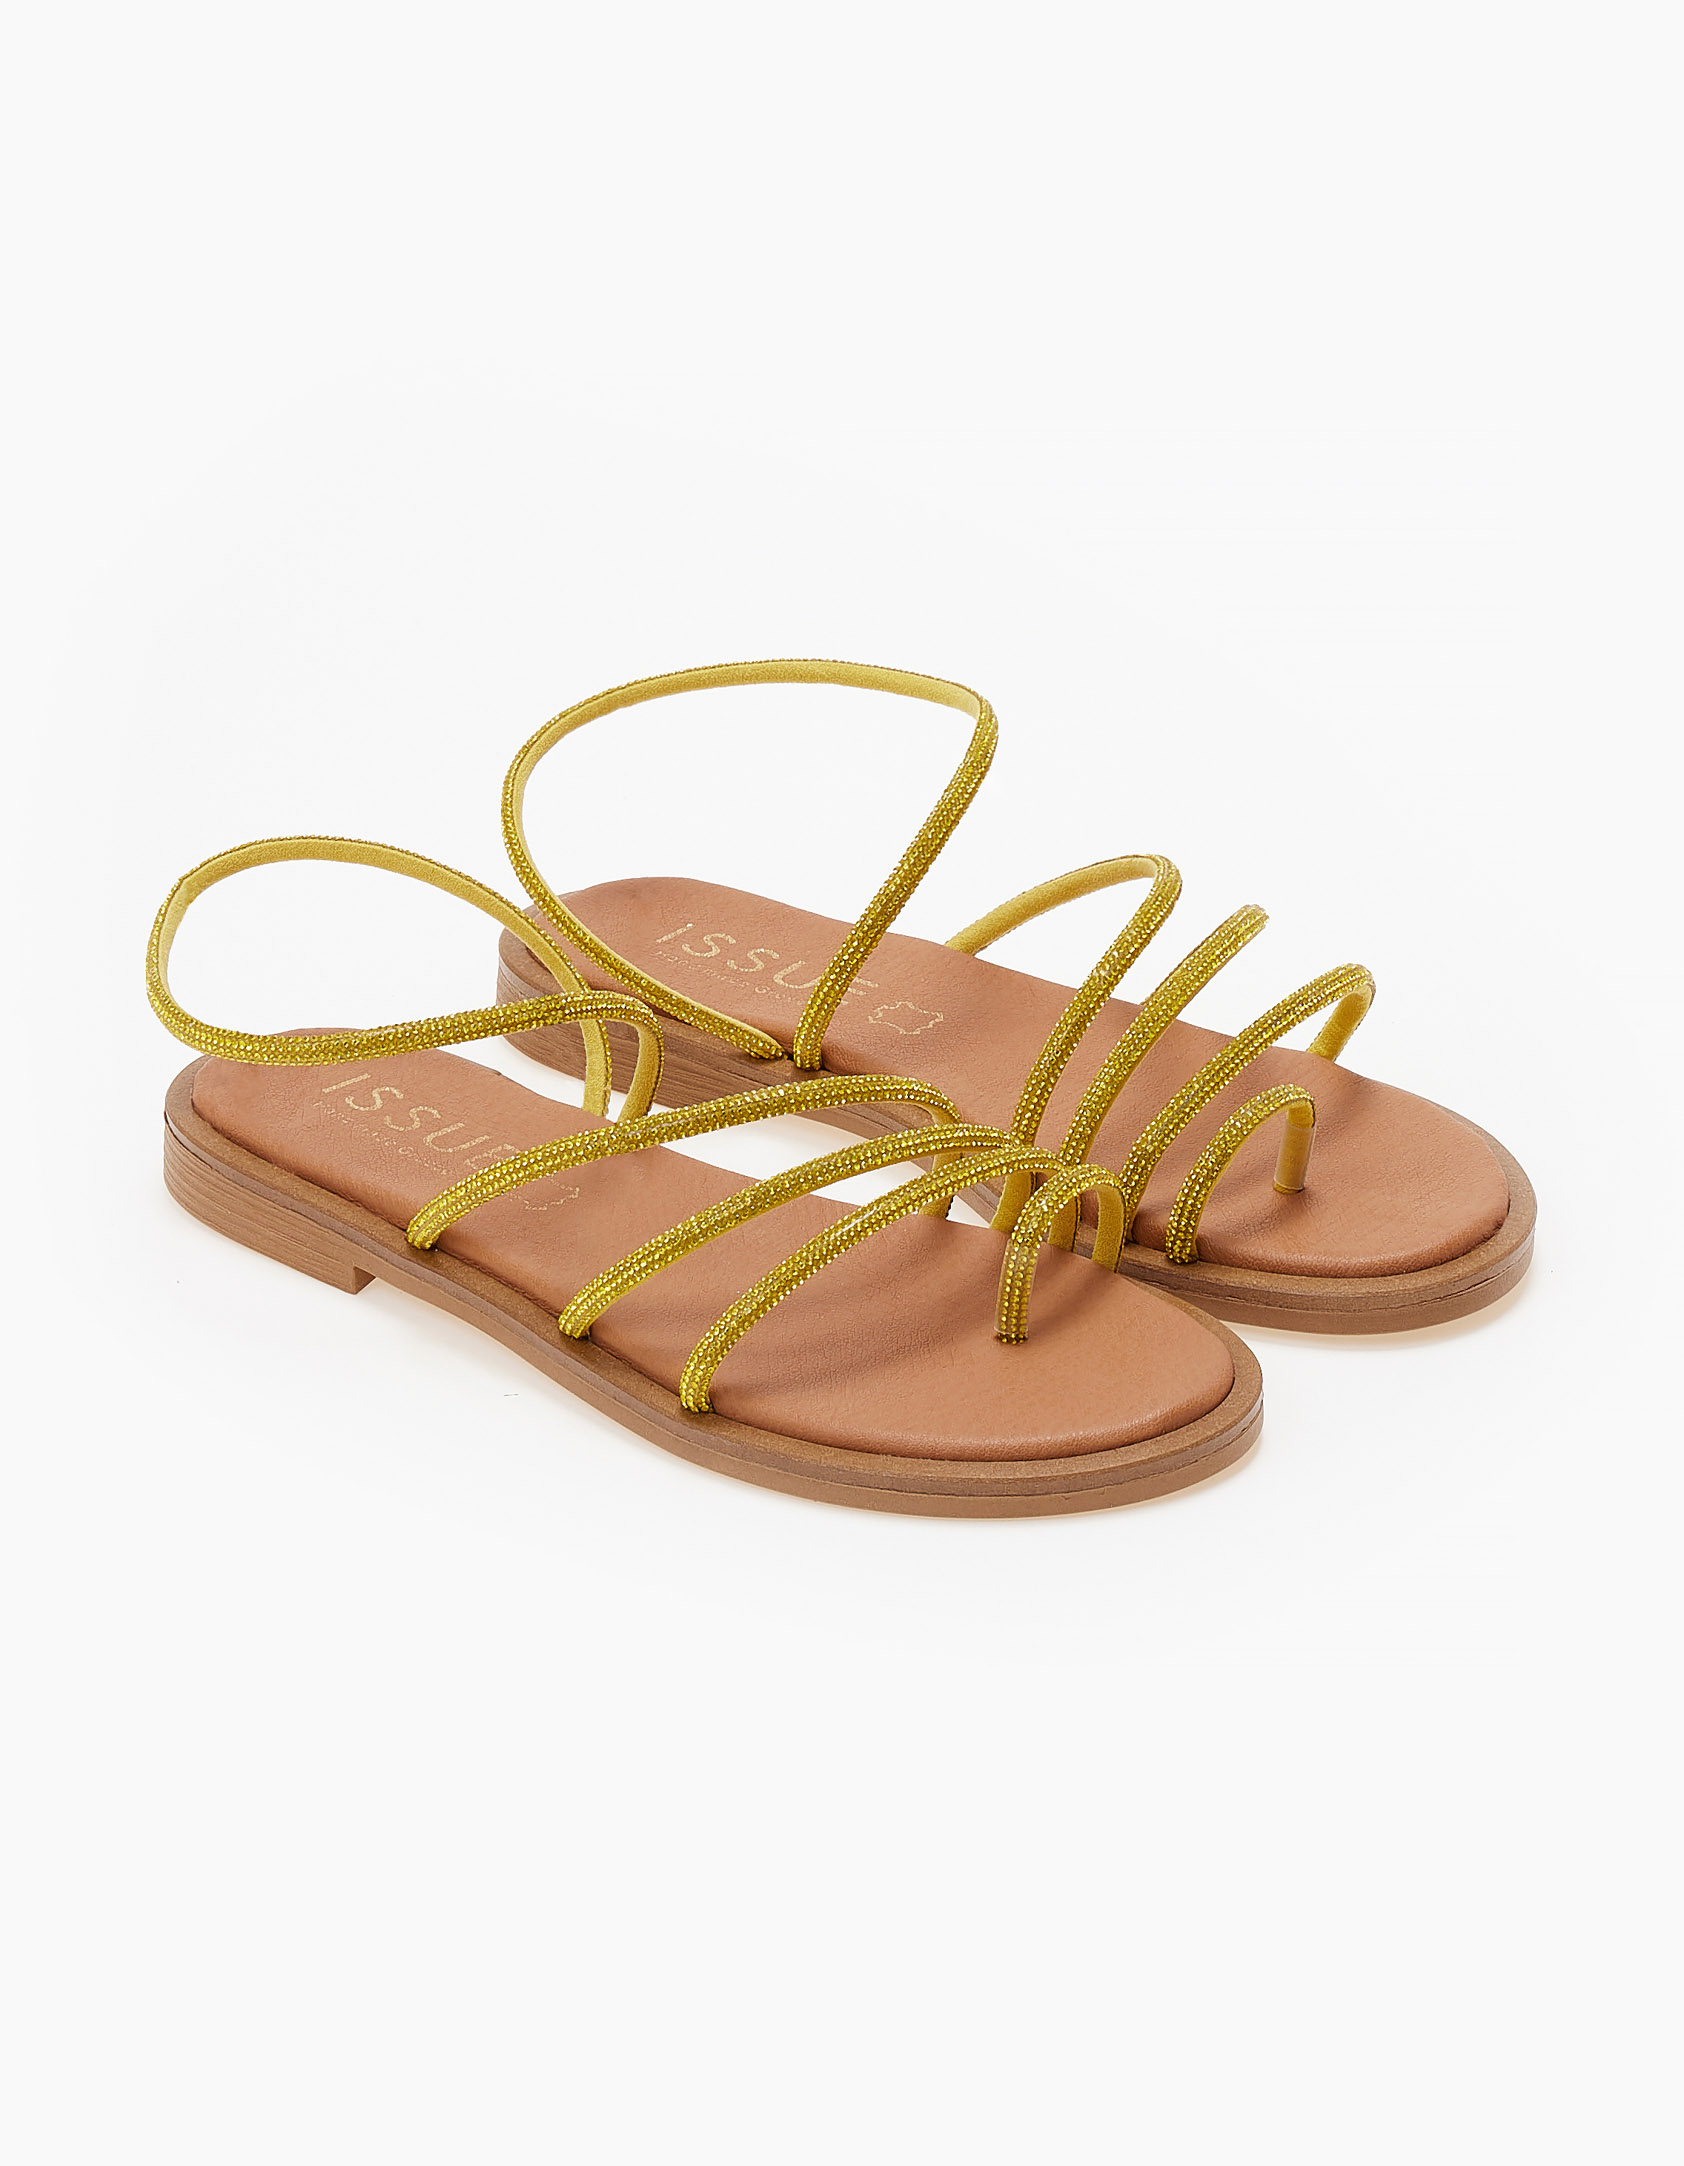 Δερμάτινα σανδάλια με strass λουράκια - Κίτρινο Παπούτσια > Σανδάλια